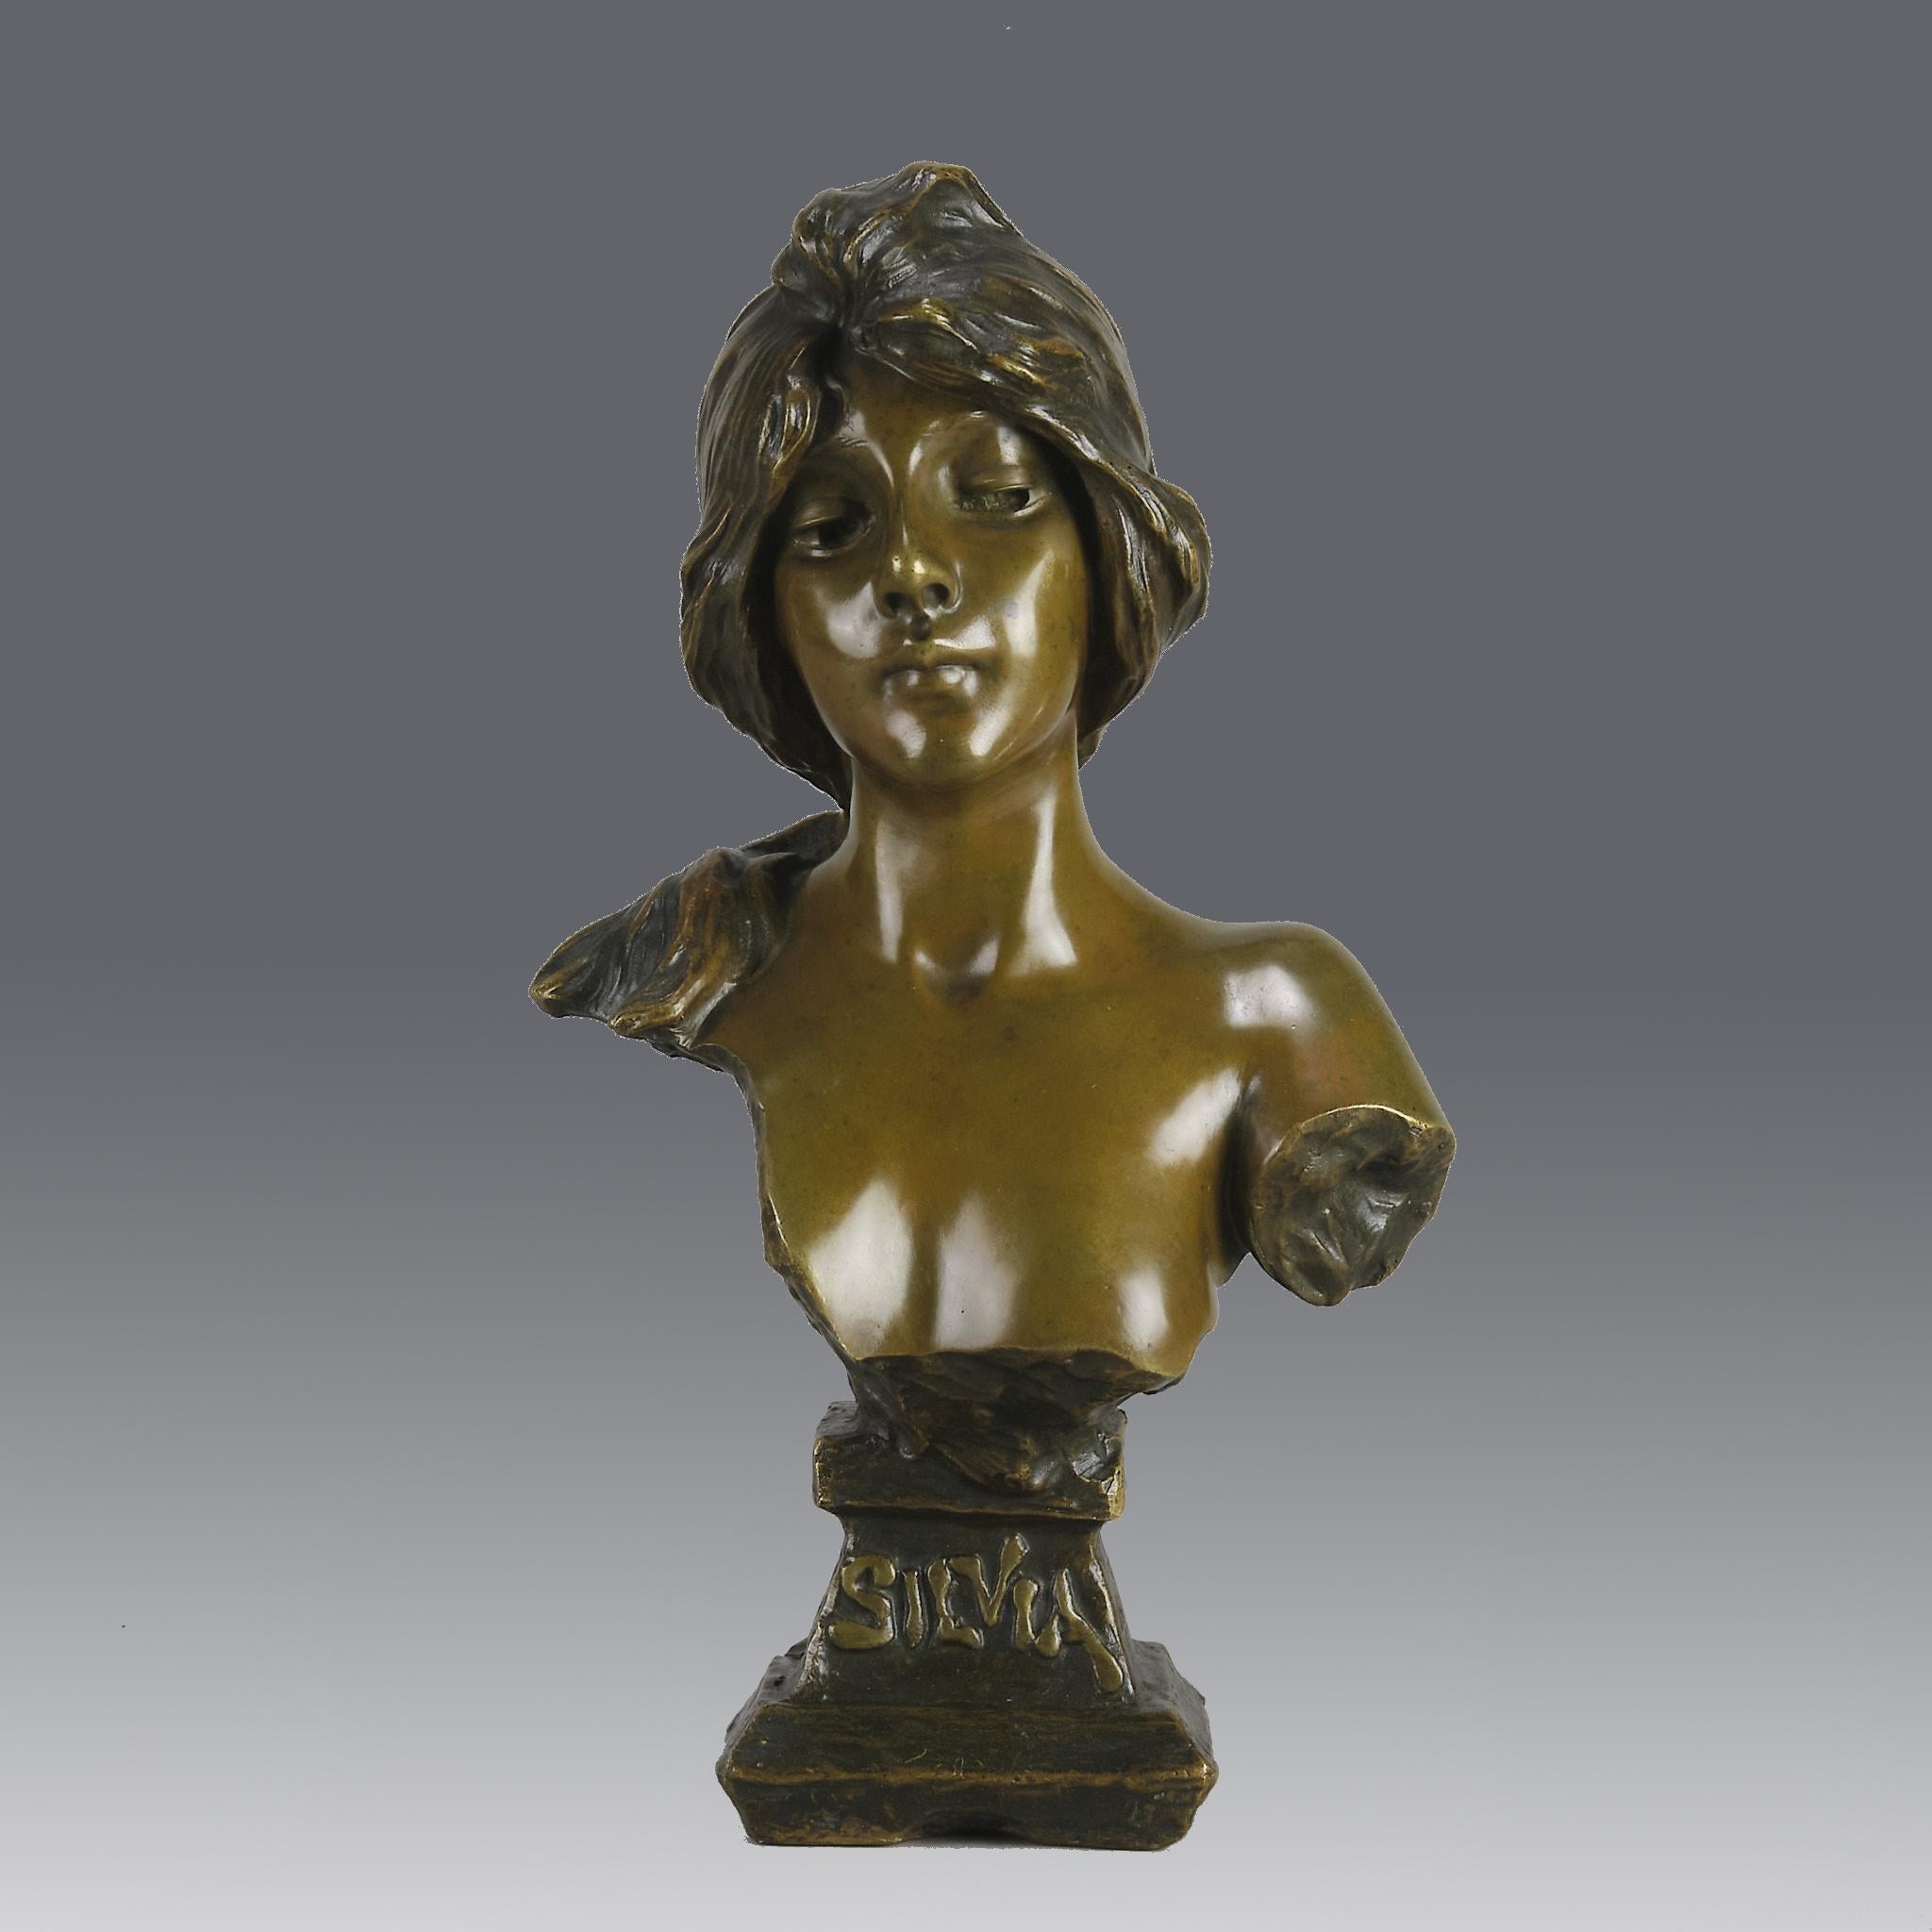 

Très beau buste en bronze français de la fin du XIXe siècle représentant une jolie jeune fille classique modelée dans le style Art nouveau, avec une fabuleuse patine multicolore marron et un vert subtil, accentuant les excellents détails finis à